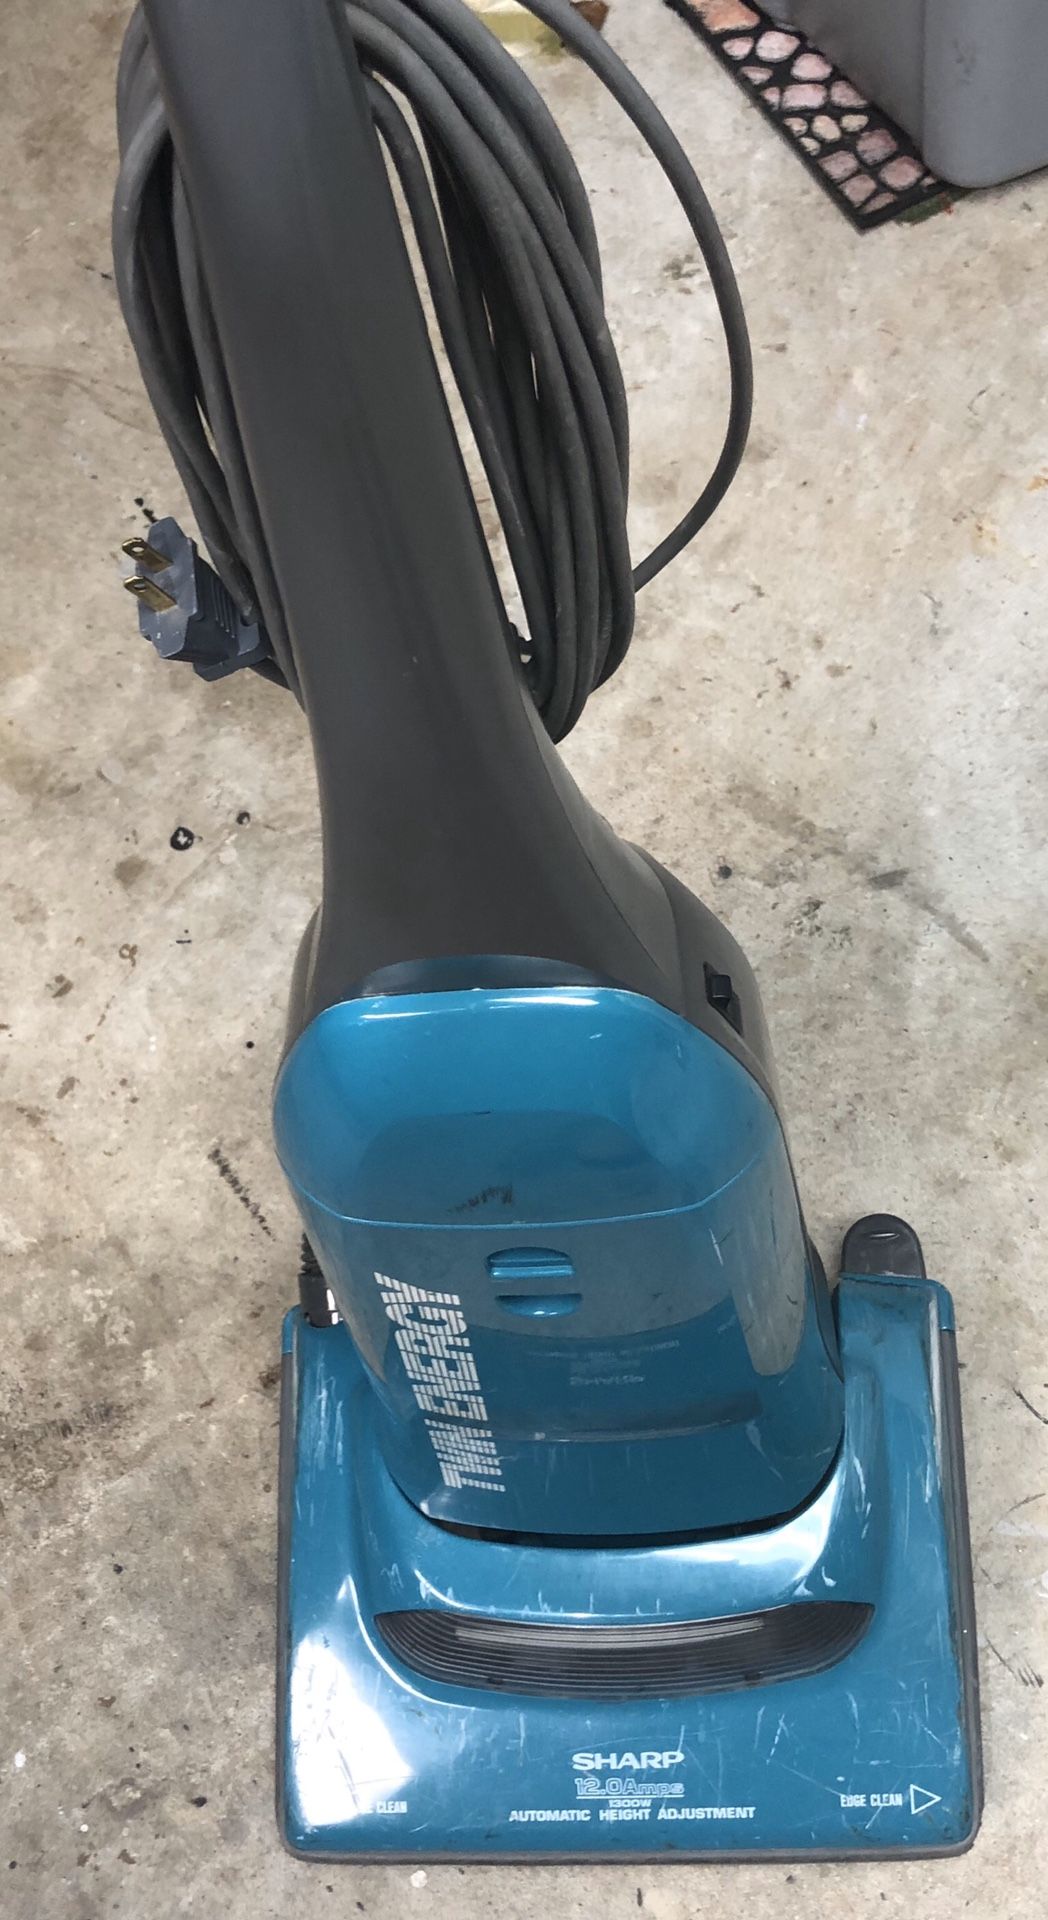 Sharp Brand Vacuum